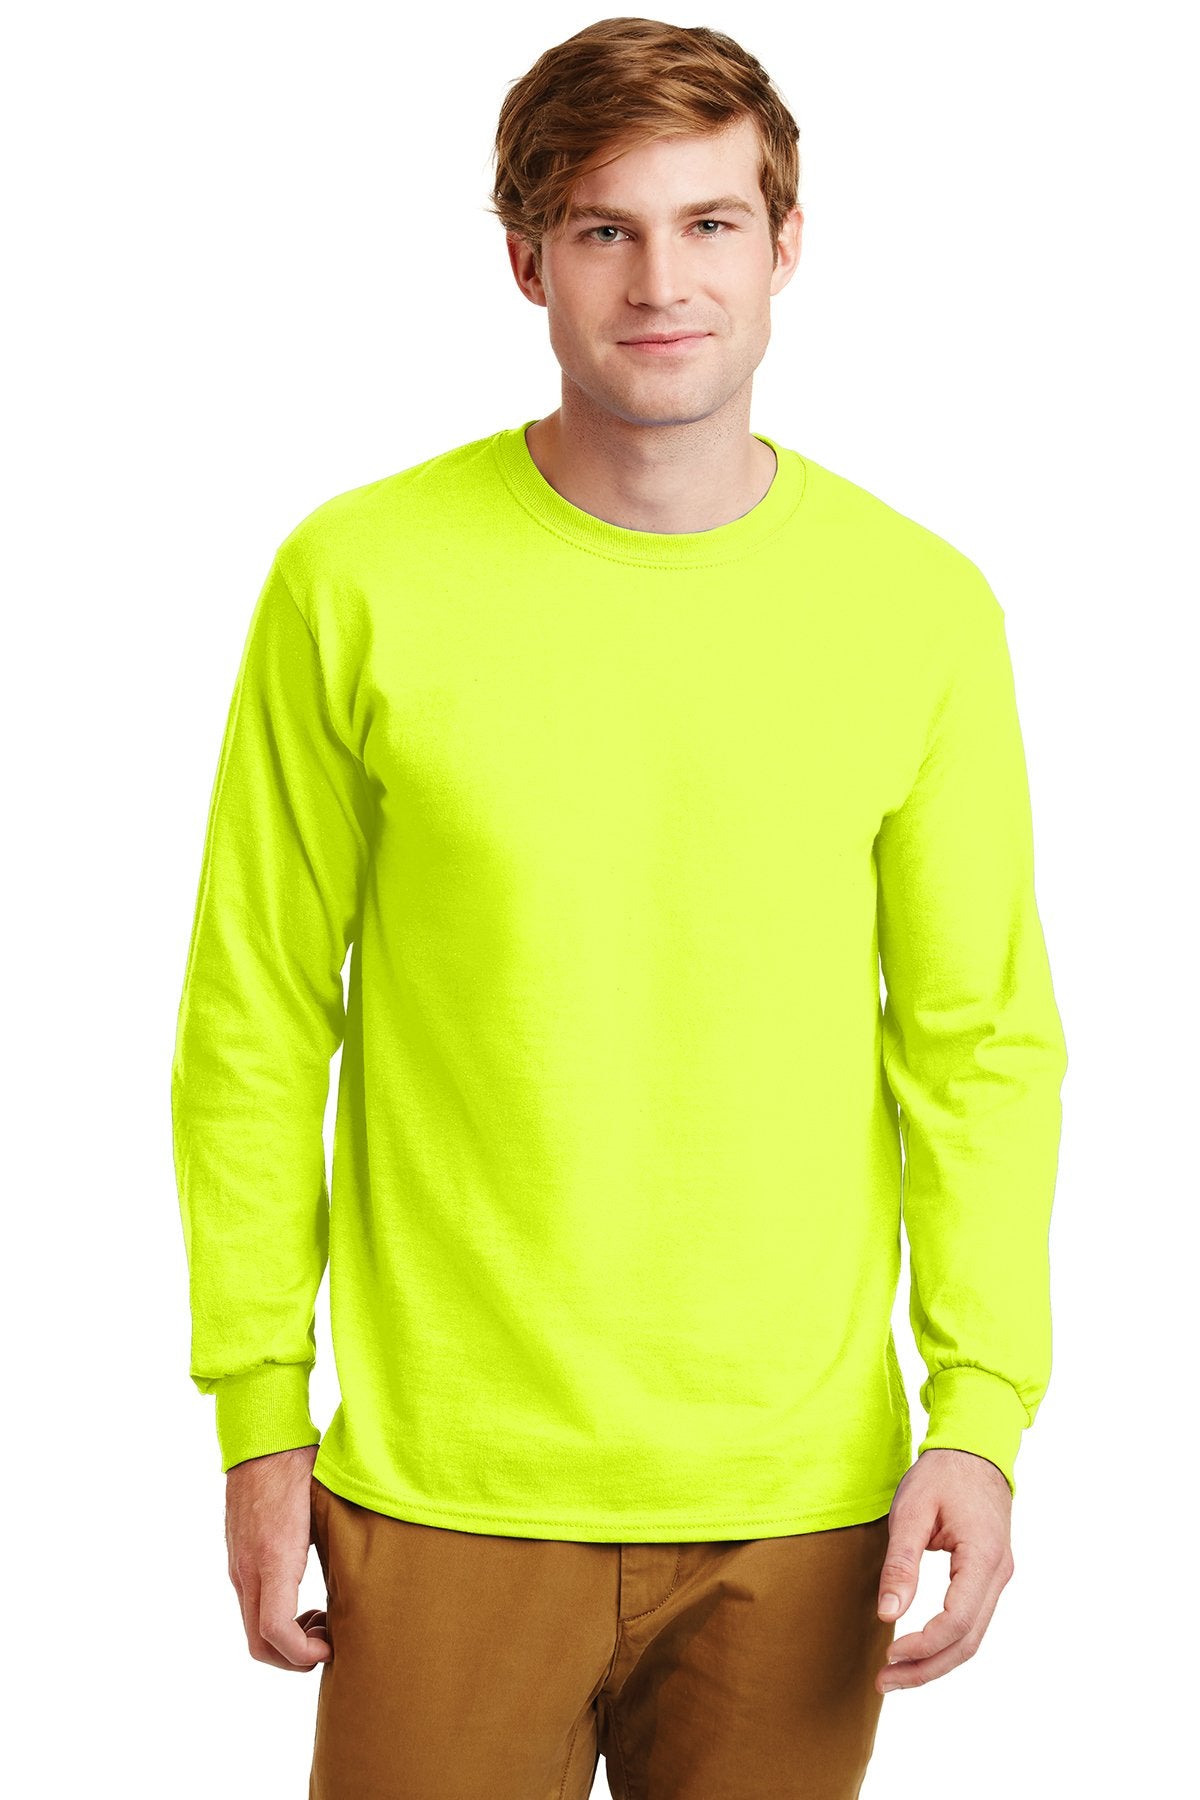 gildan ultra cotton long sleeve t shirt g2400 safety green